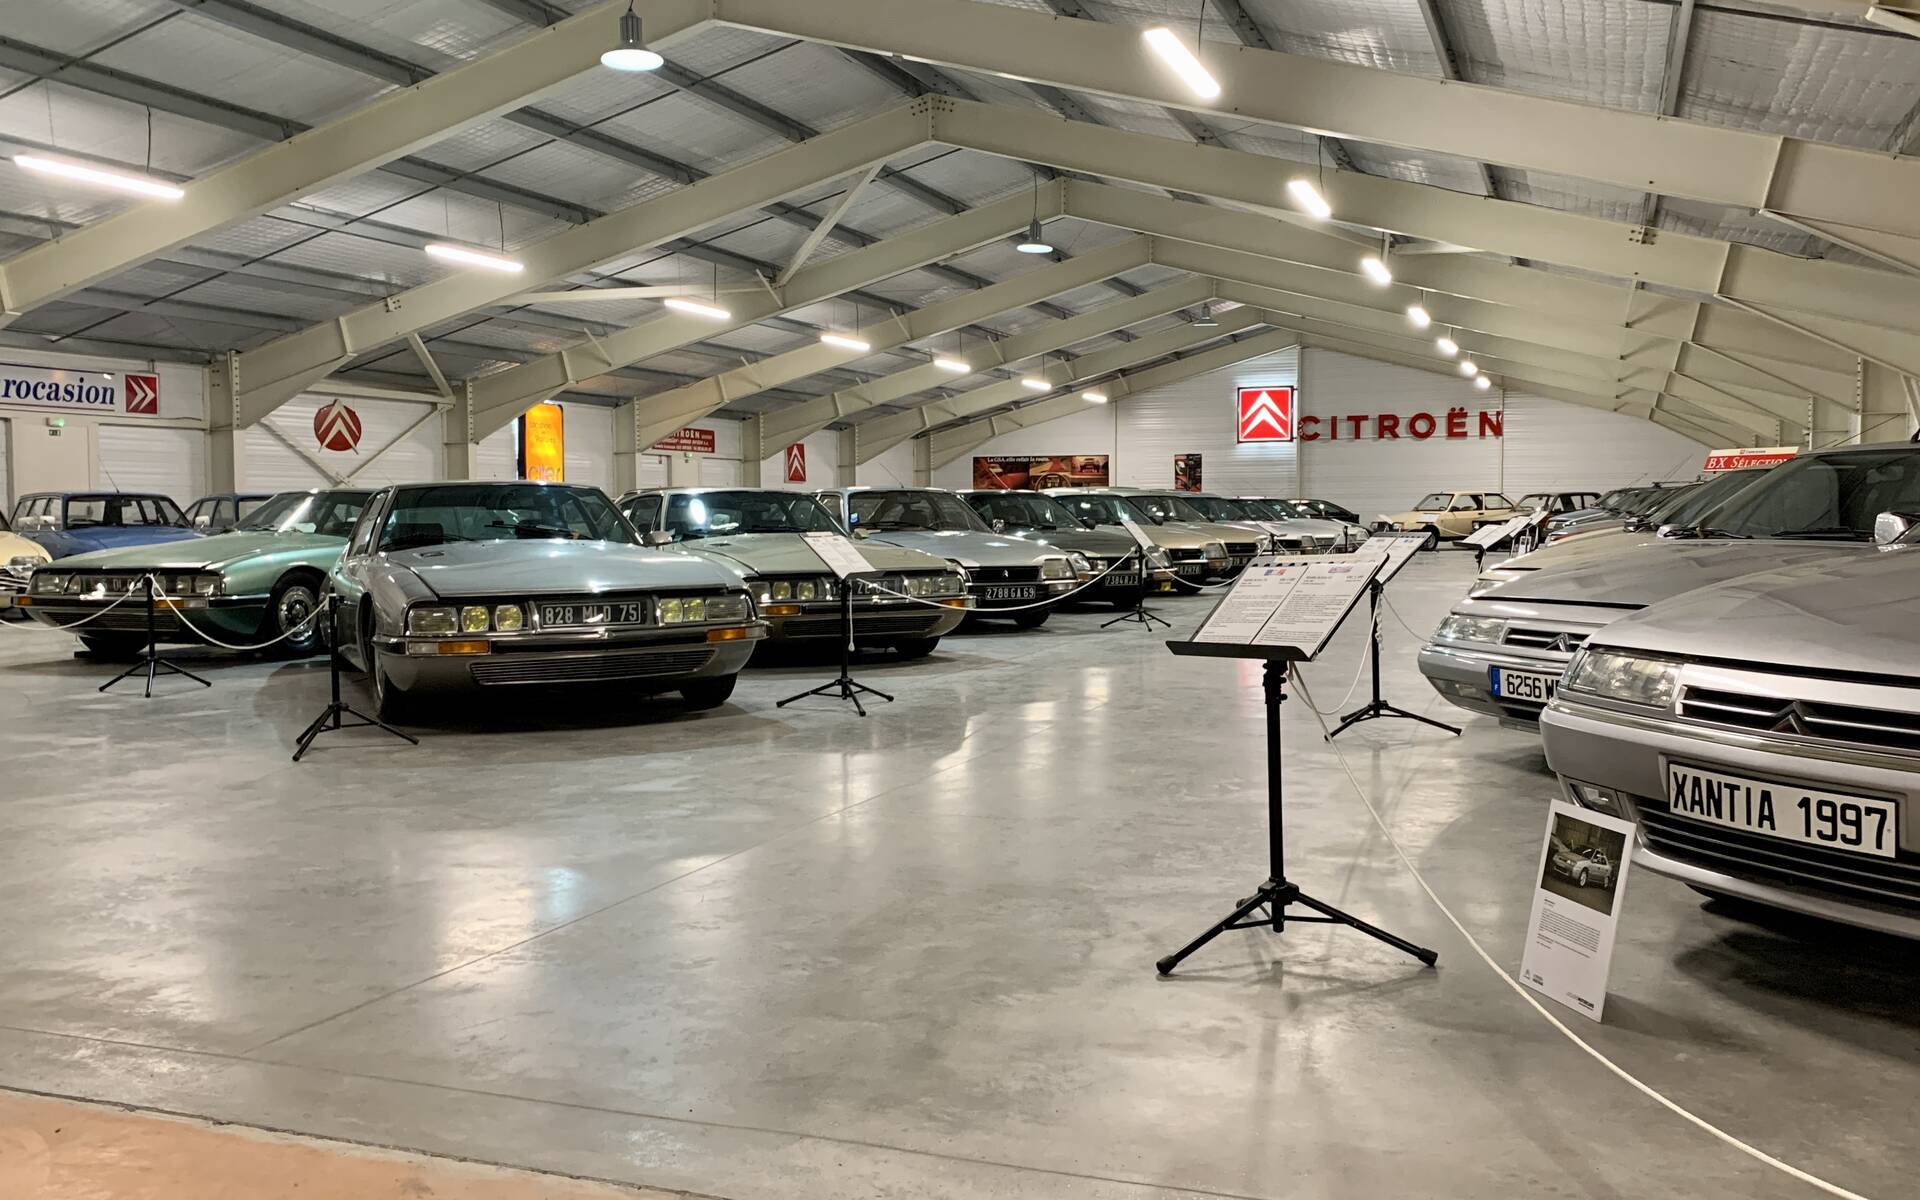 32 - Photos: plus de 100 Citroën d'exception réunies dans un musée en France 543098-photos-plus-de-100-citroen-d-exception-reunies-dans-un-musee-en-france